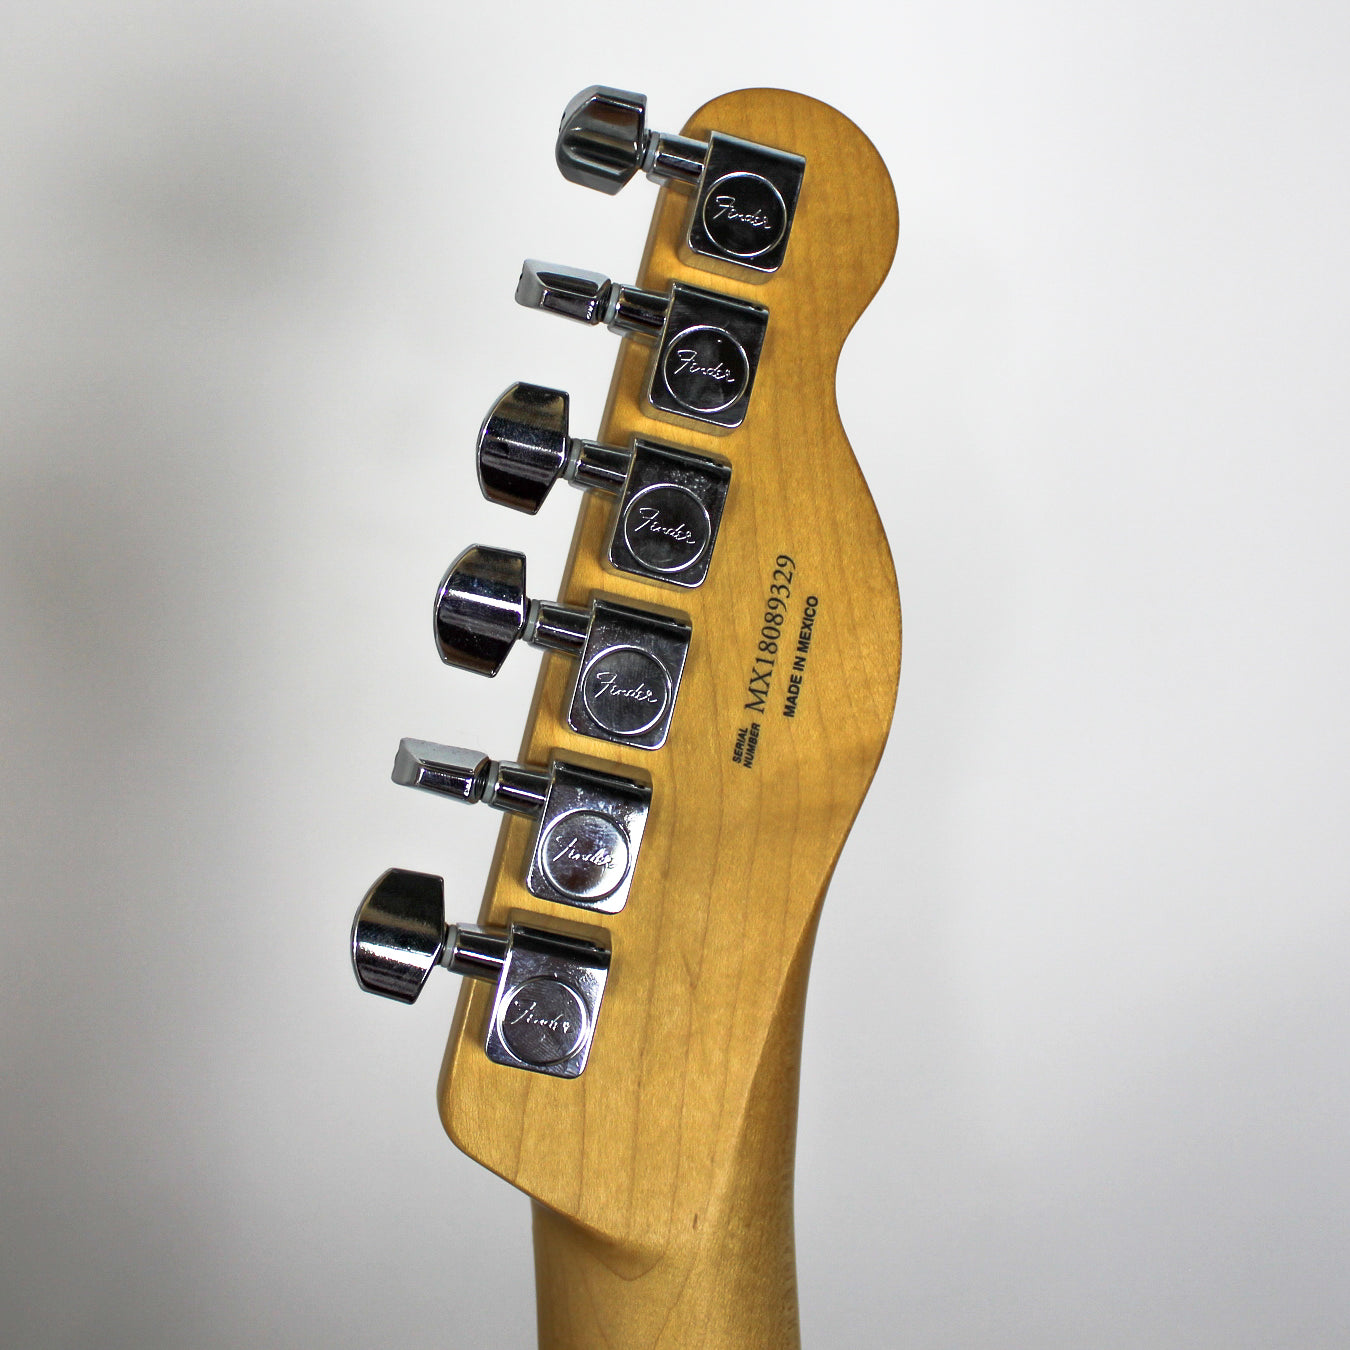 Fender Player Telecaster Left-Handed 3-Tone Sunburst